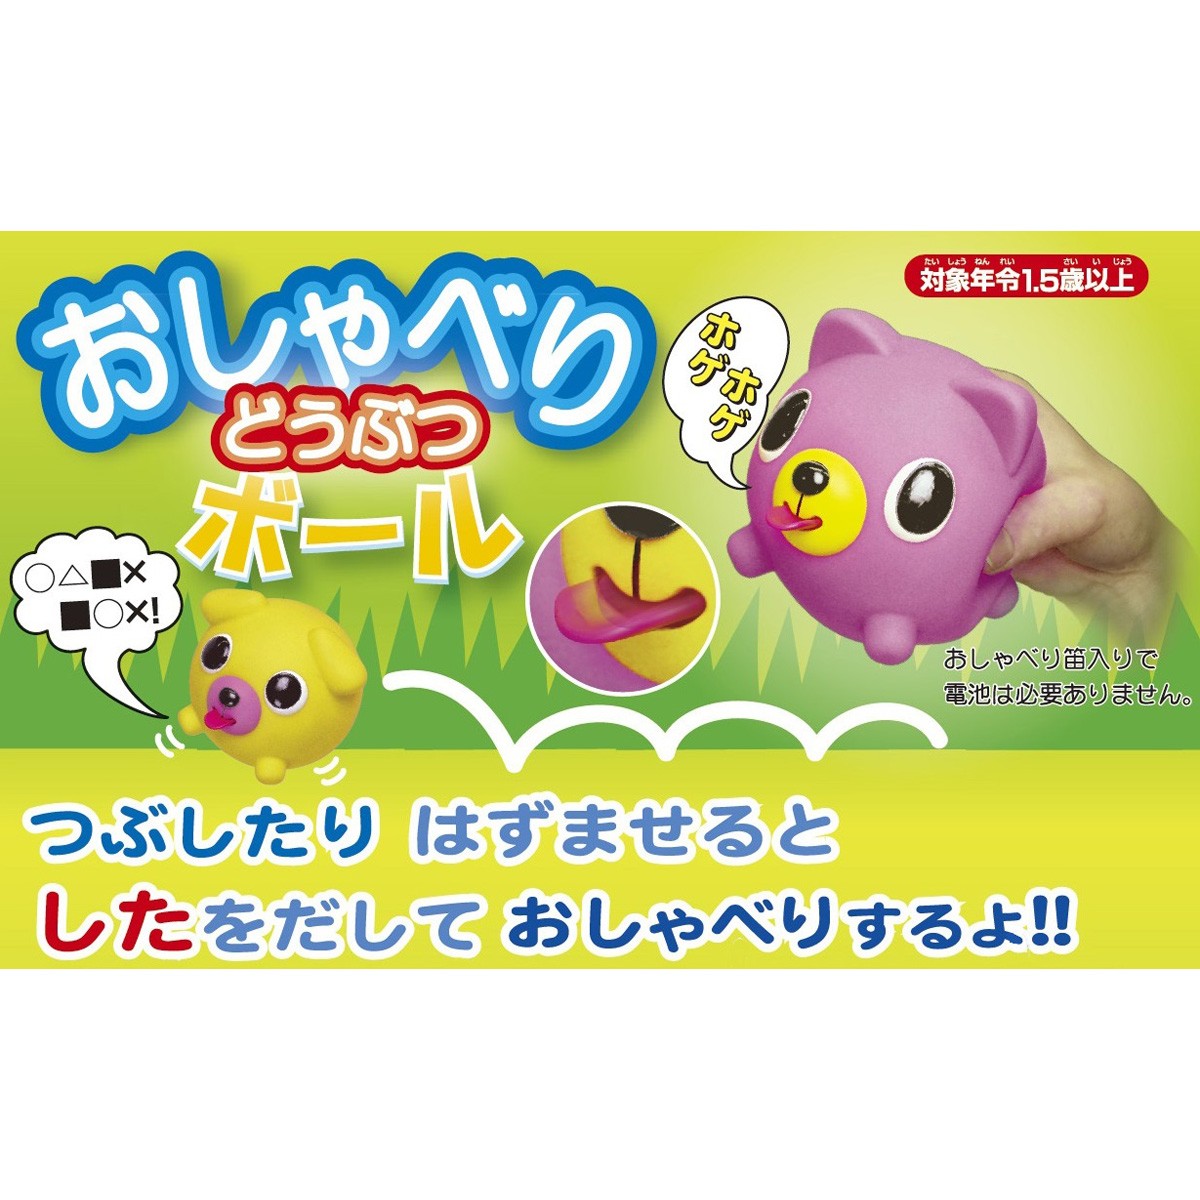 Jabber Balls jouets japonais pouet pouet cat chat